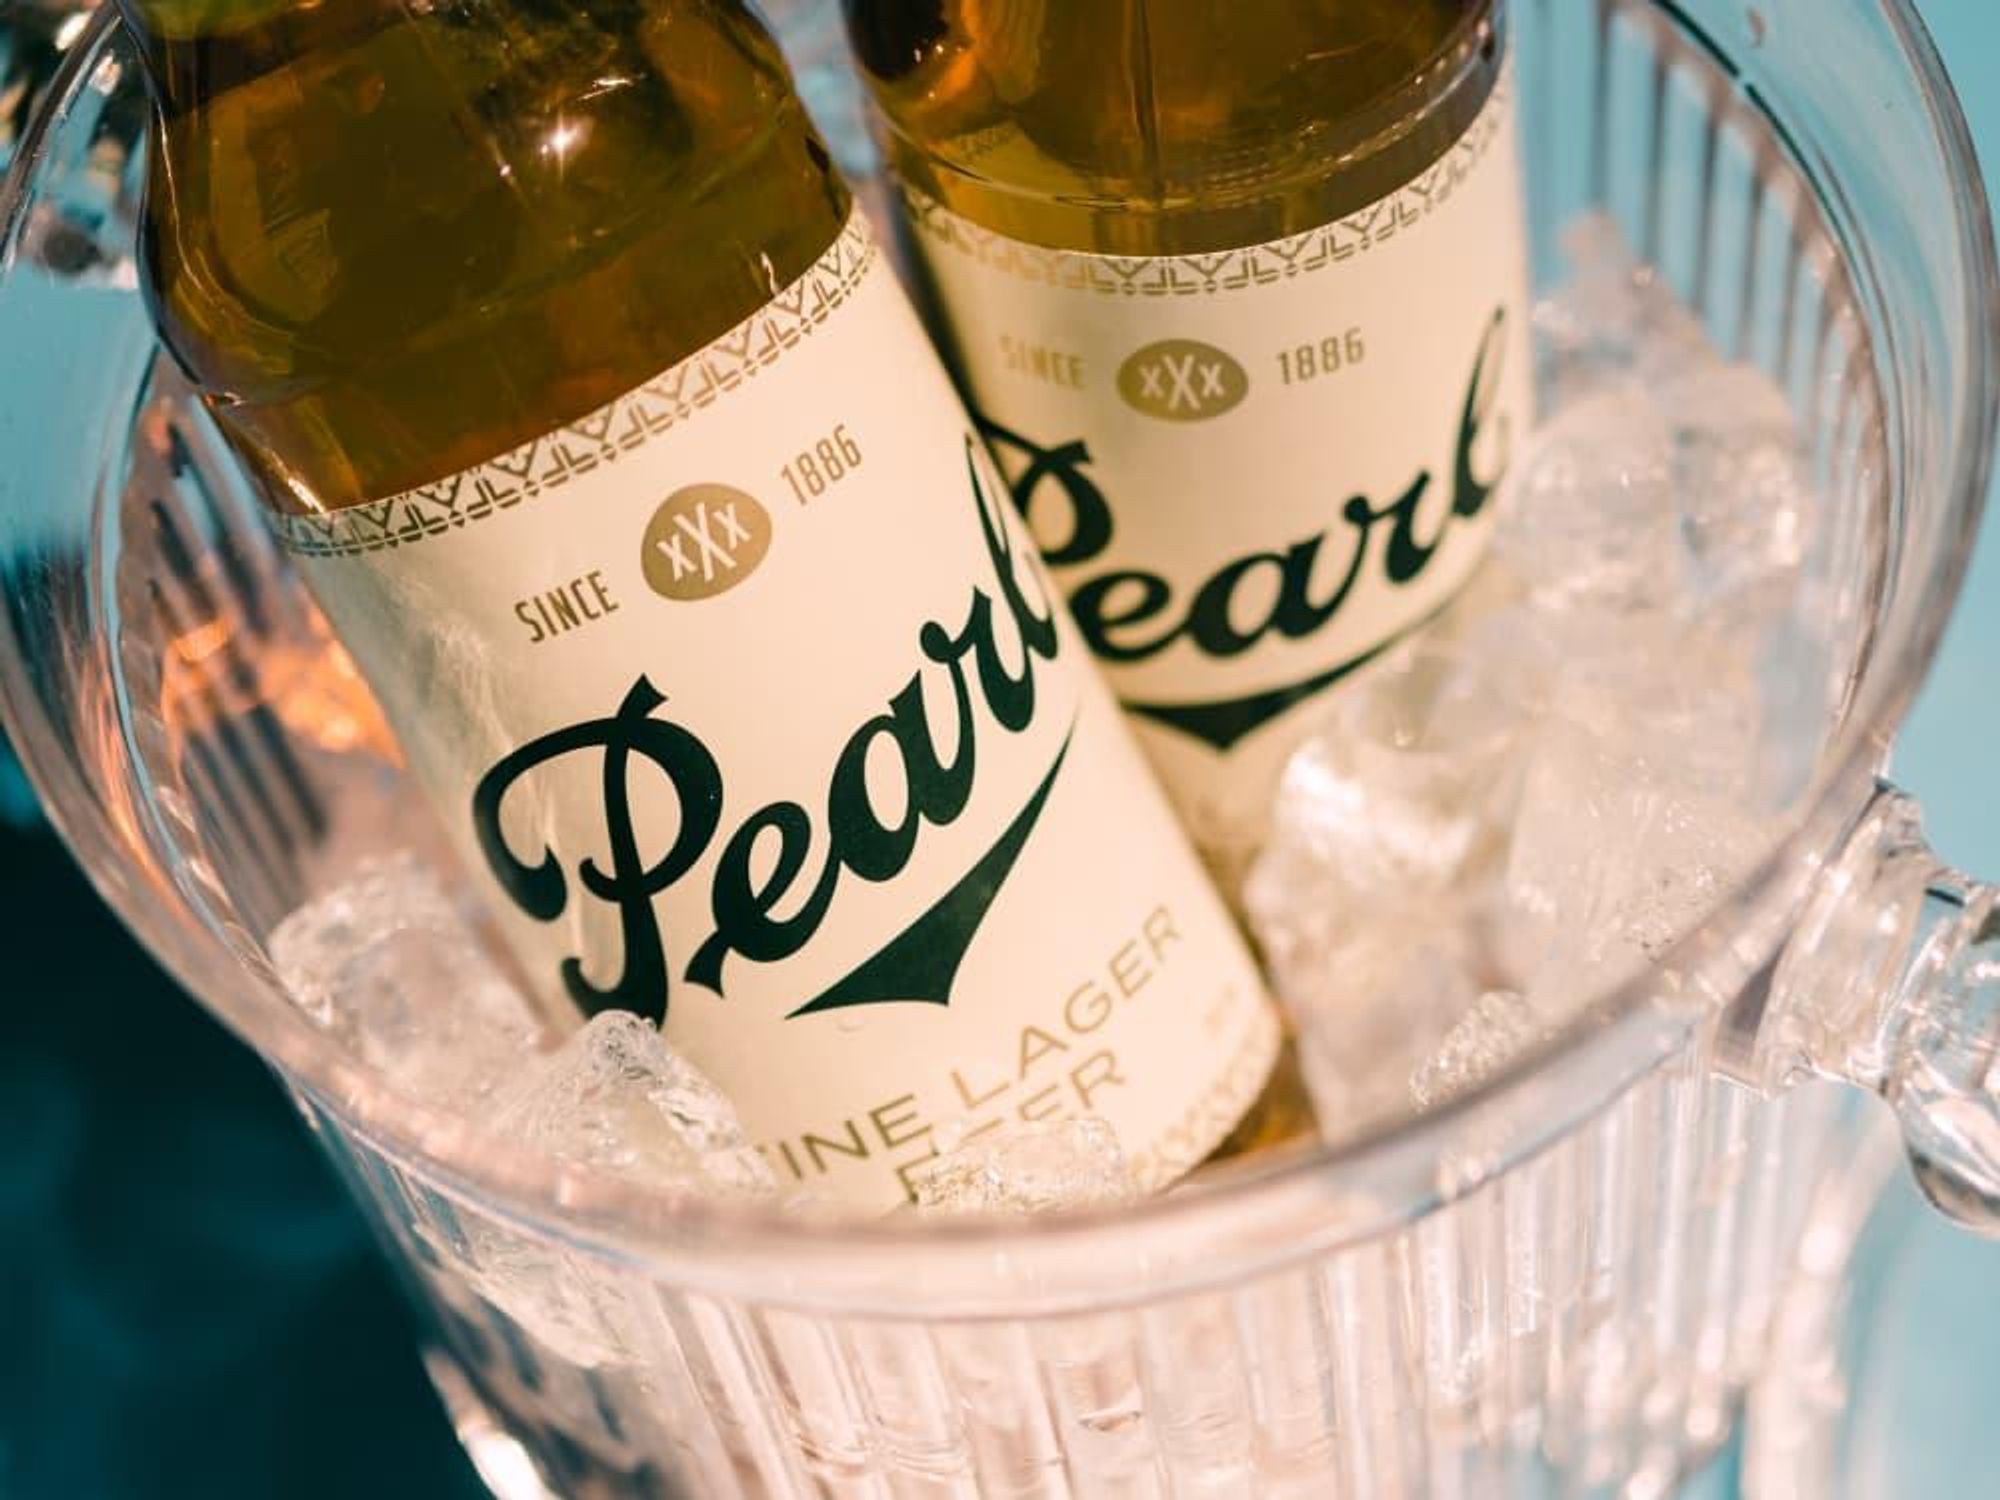 Pearl Beer new branding